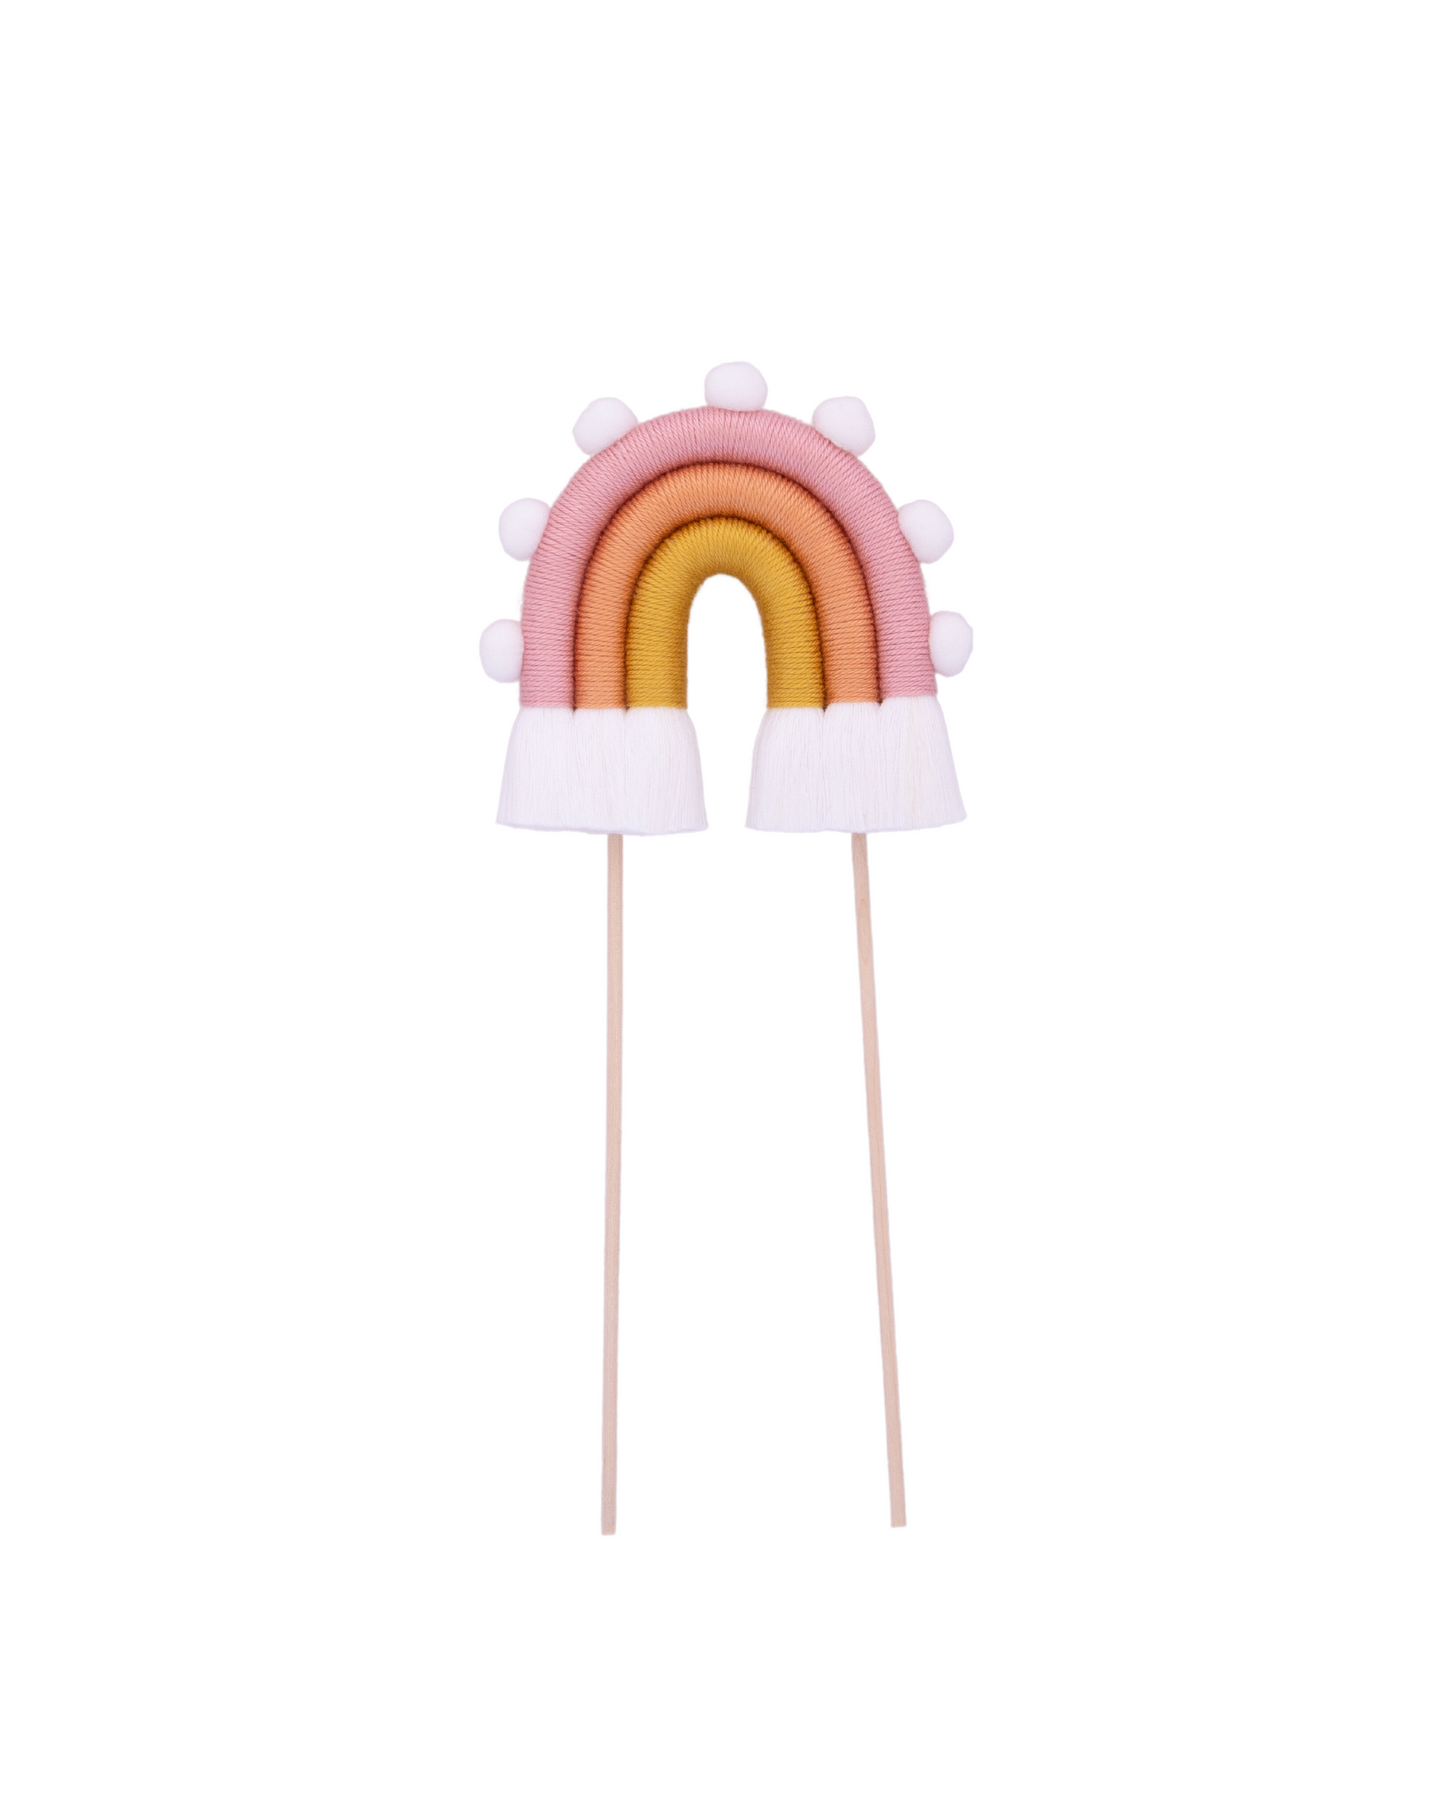 Arco-íris “Flower” tamanho S com pompons